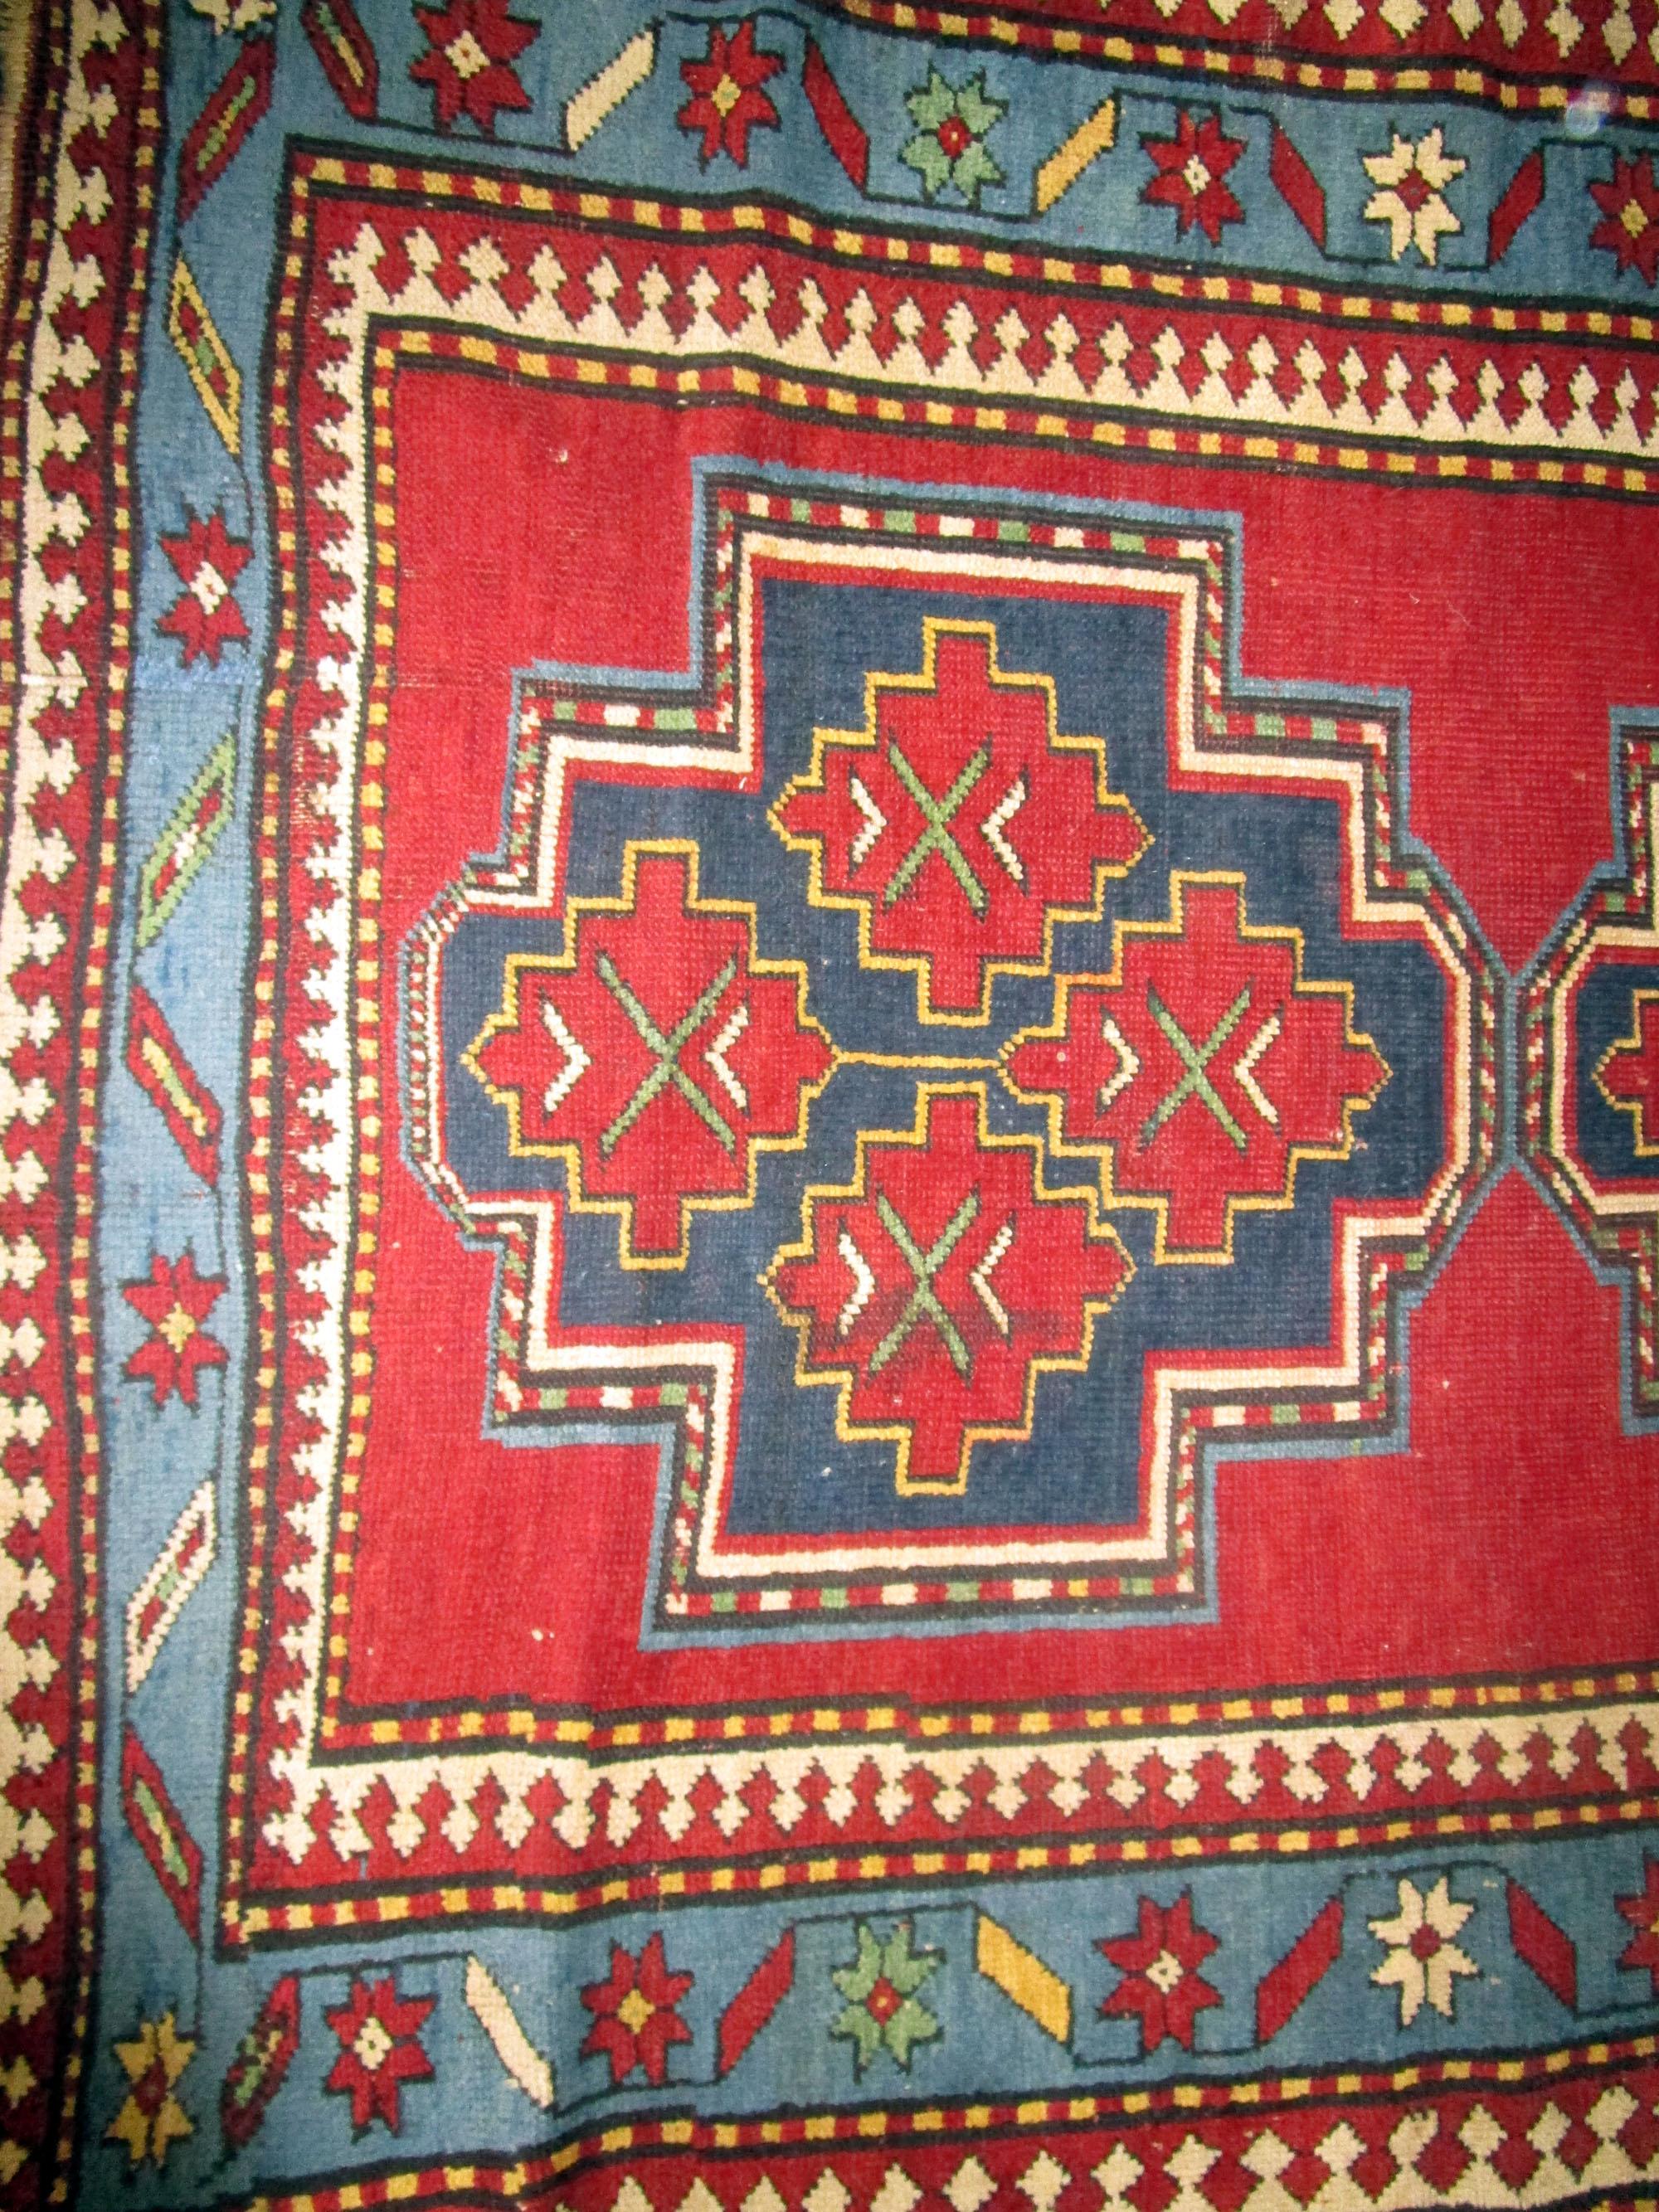 Ce beau tapis Kazak présente un double grand motif géométrique audacieux et dominant, avec un motif plus petit à l'intérieur. Les bordures et le fond détaillés lui confèrent un avantage qui le différencie des autres tapis du marché. Les couleurs